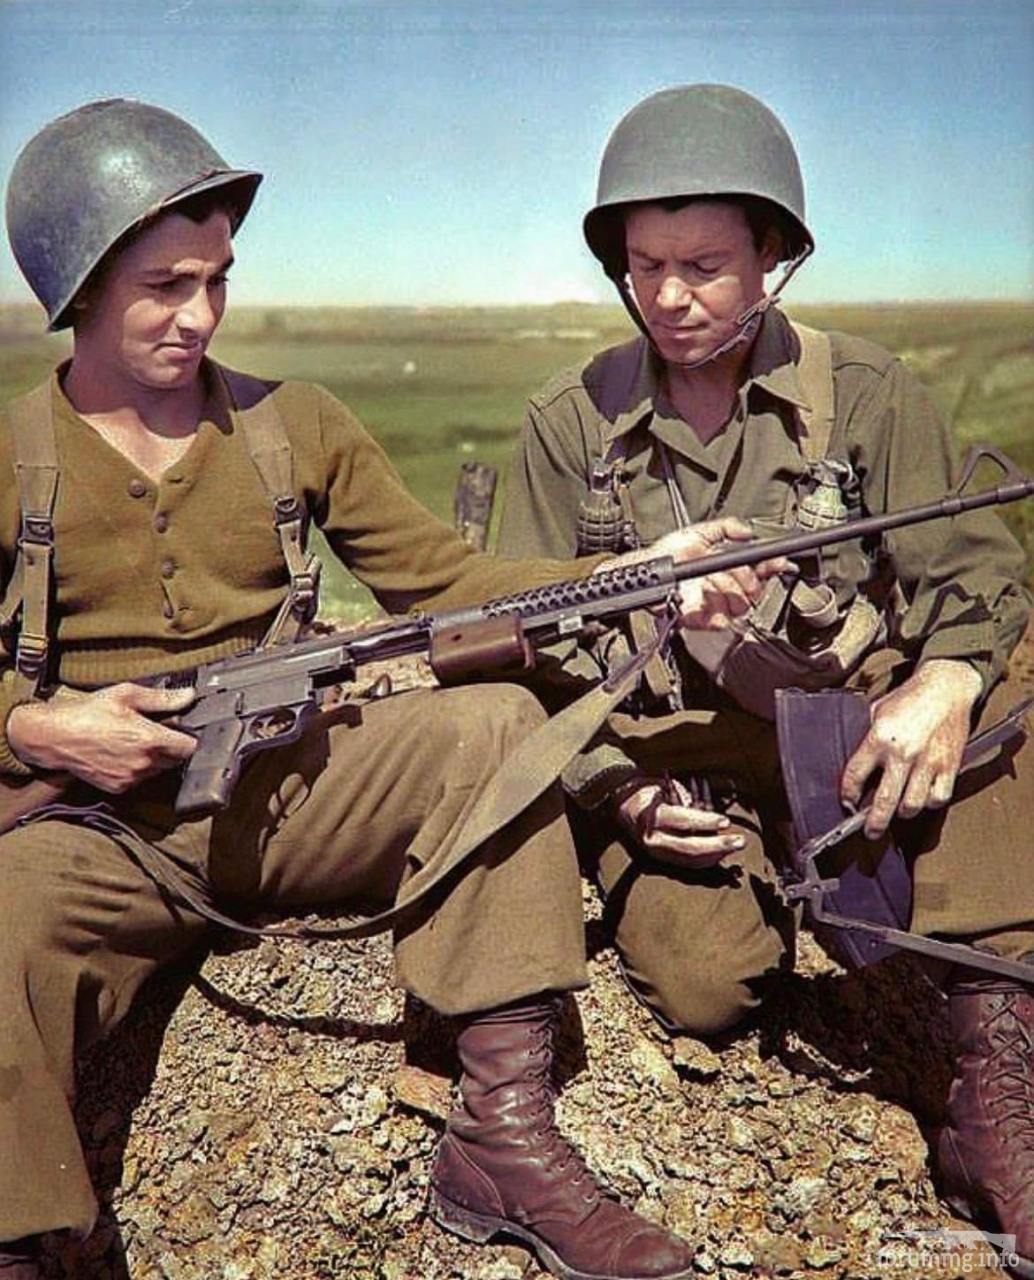 154091 - Военное фото 1939-1945 г.г. Западный фронт и Африка.